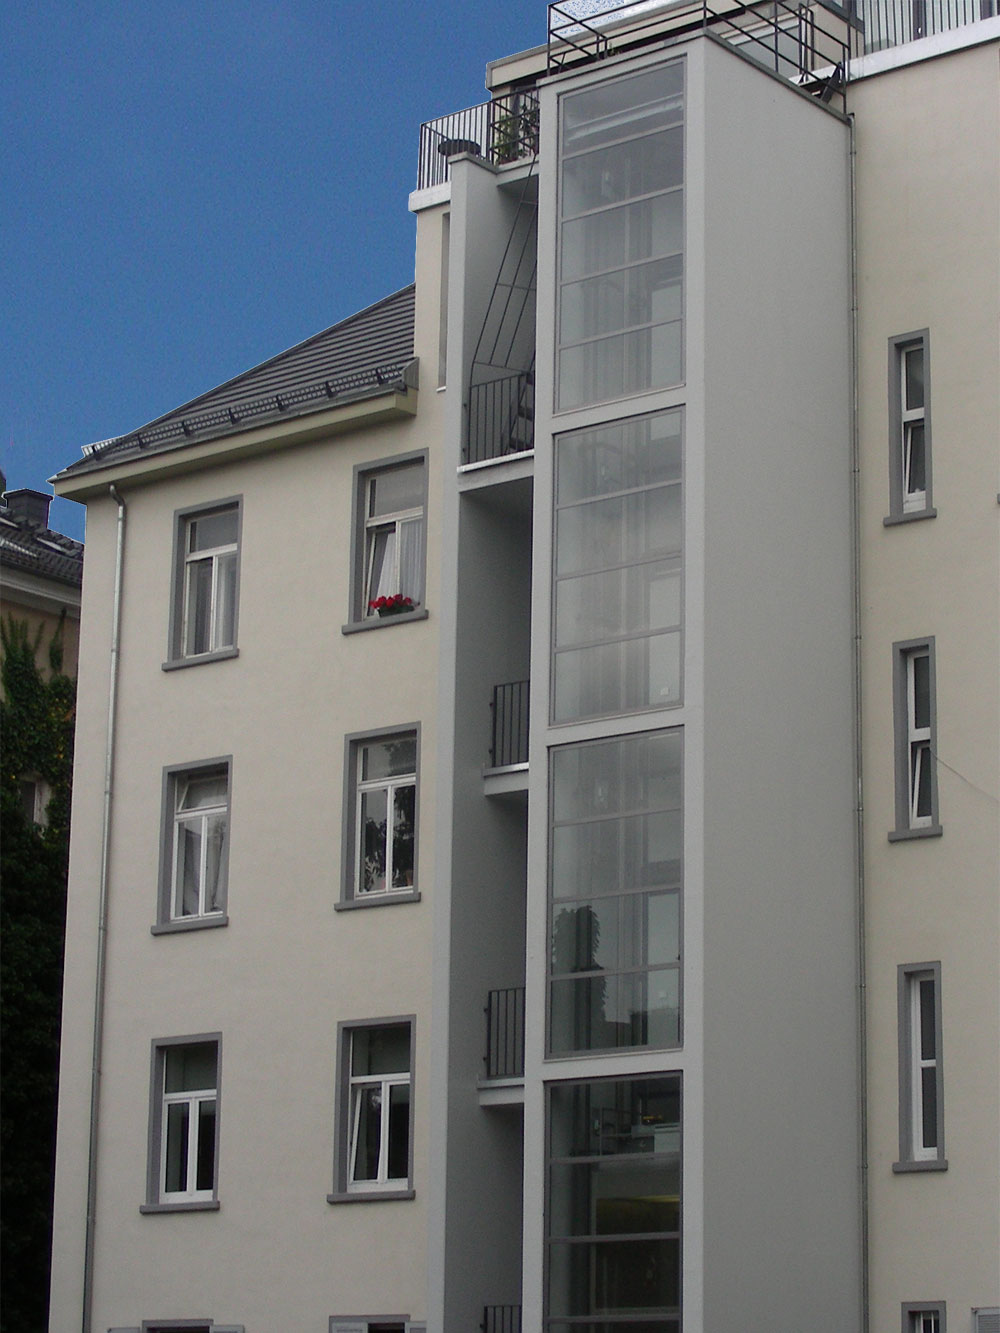 Wohnhaus in Frankfurt